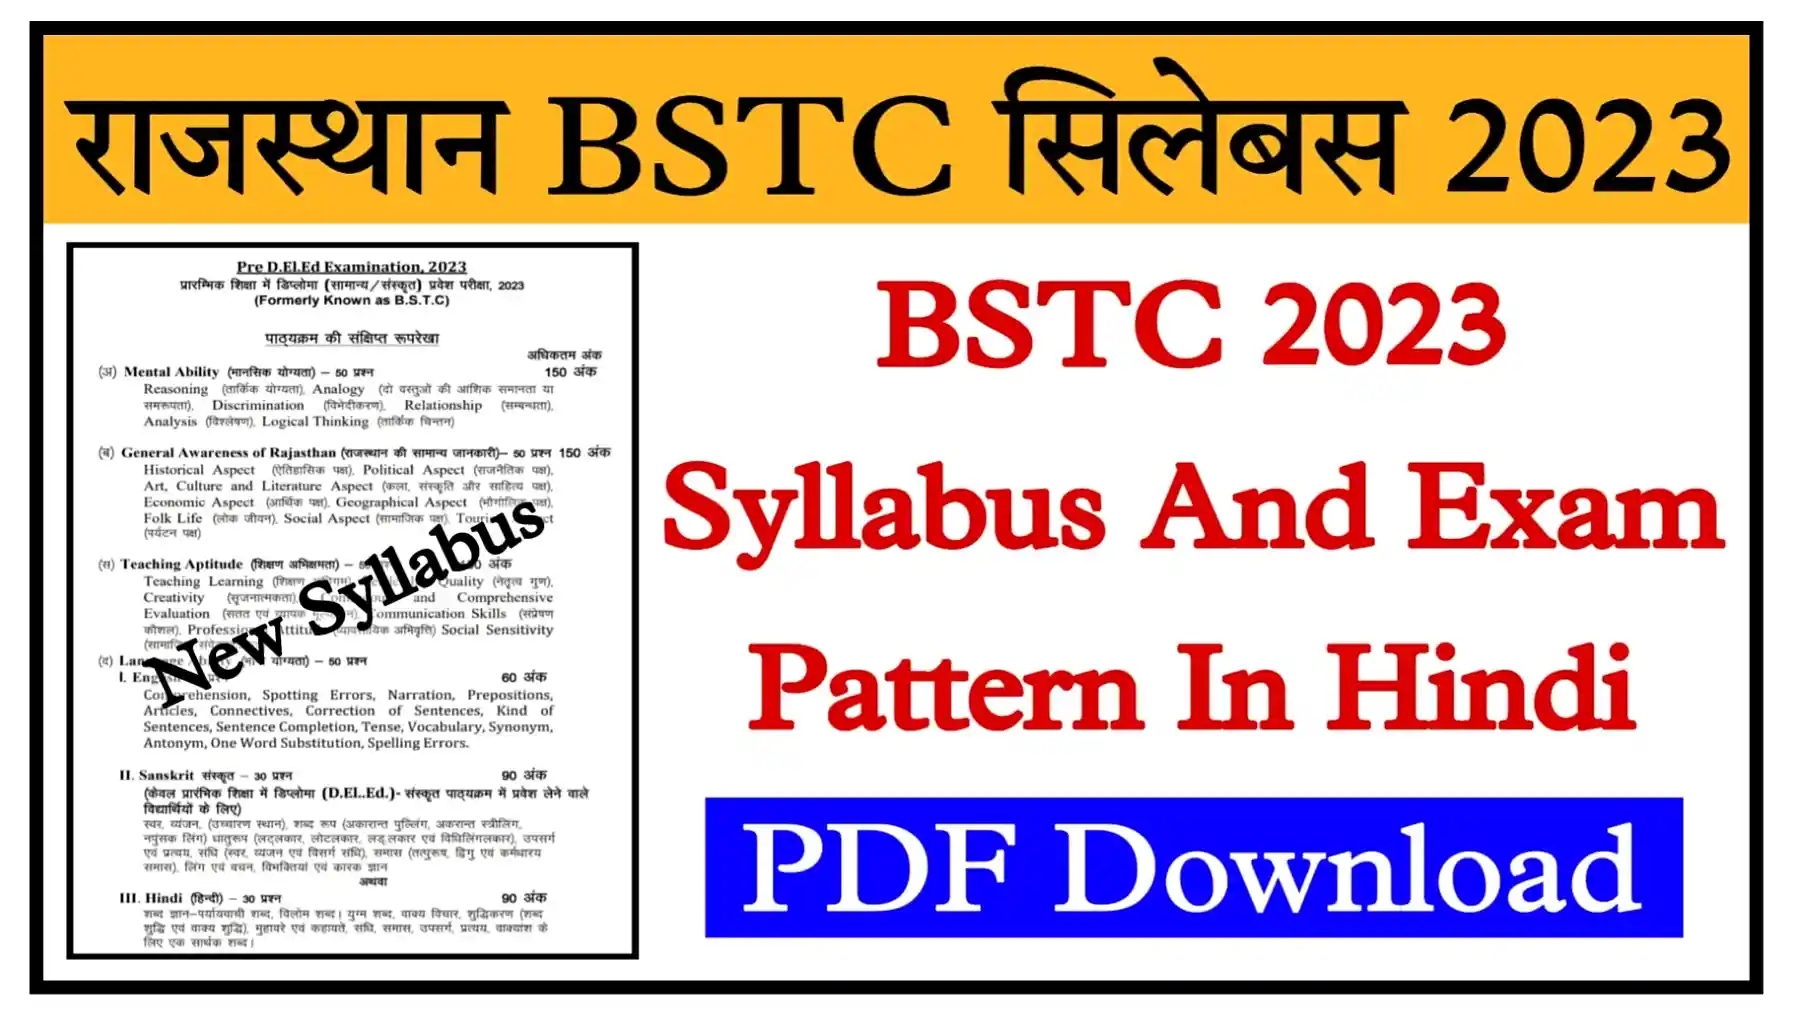 Rajasthan BSTC Syllabus 2023 In Hindi राजस्थान बीएसटीसी एग्जाम 2023 का संपूर्ण नया सिलेबस और एग्जाम पैटर्न जारी, यहां से डाउनलोड करें